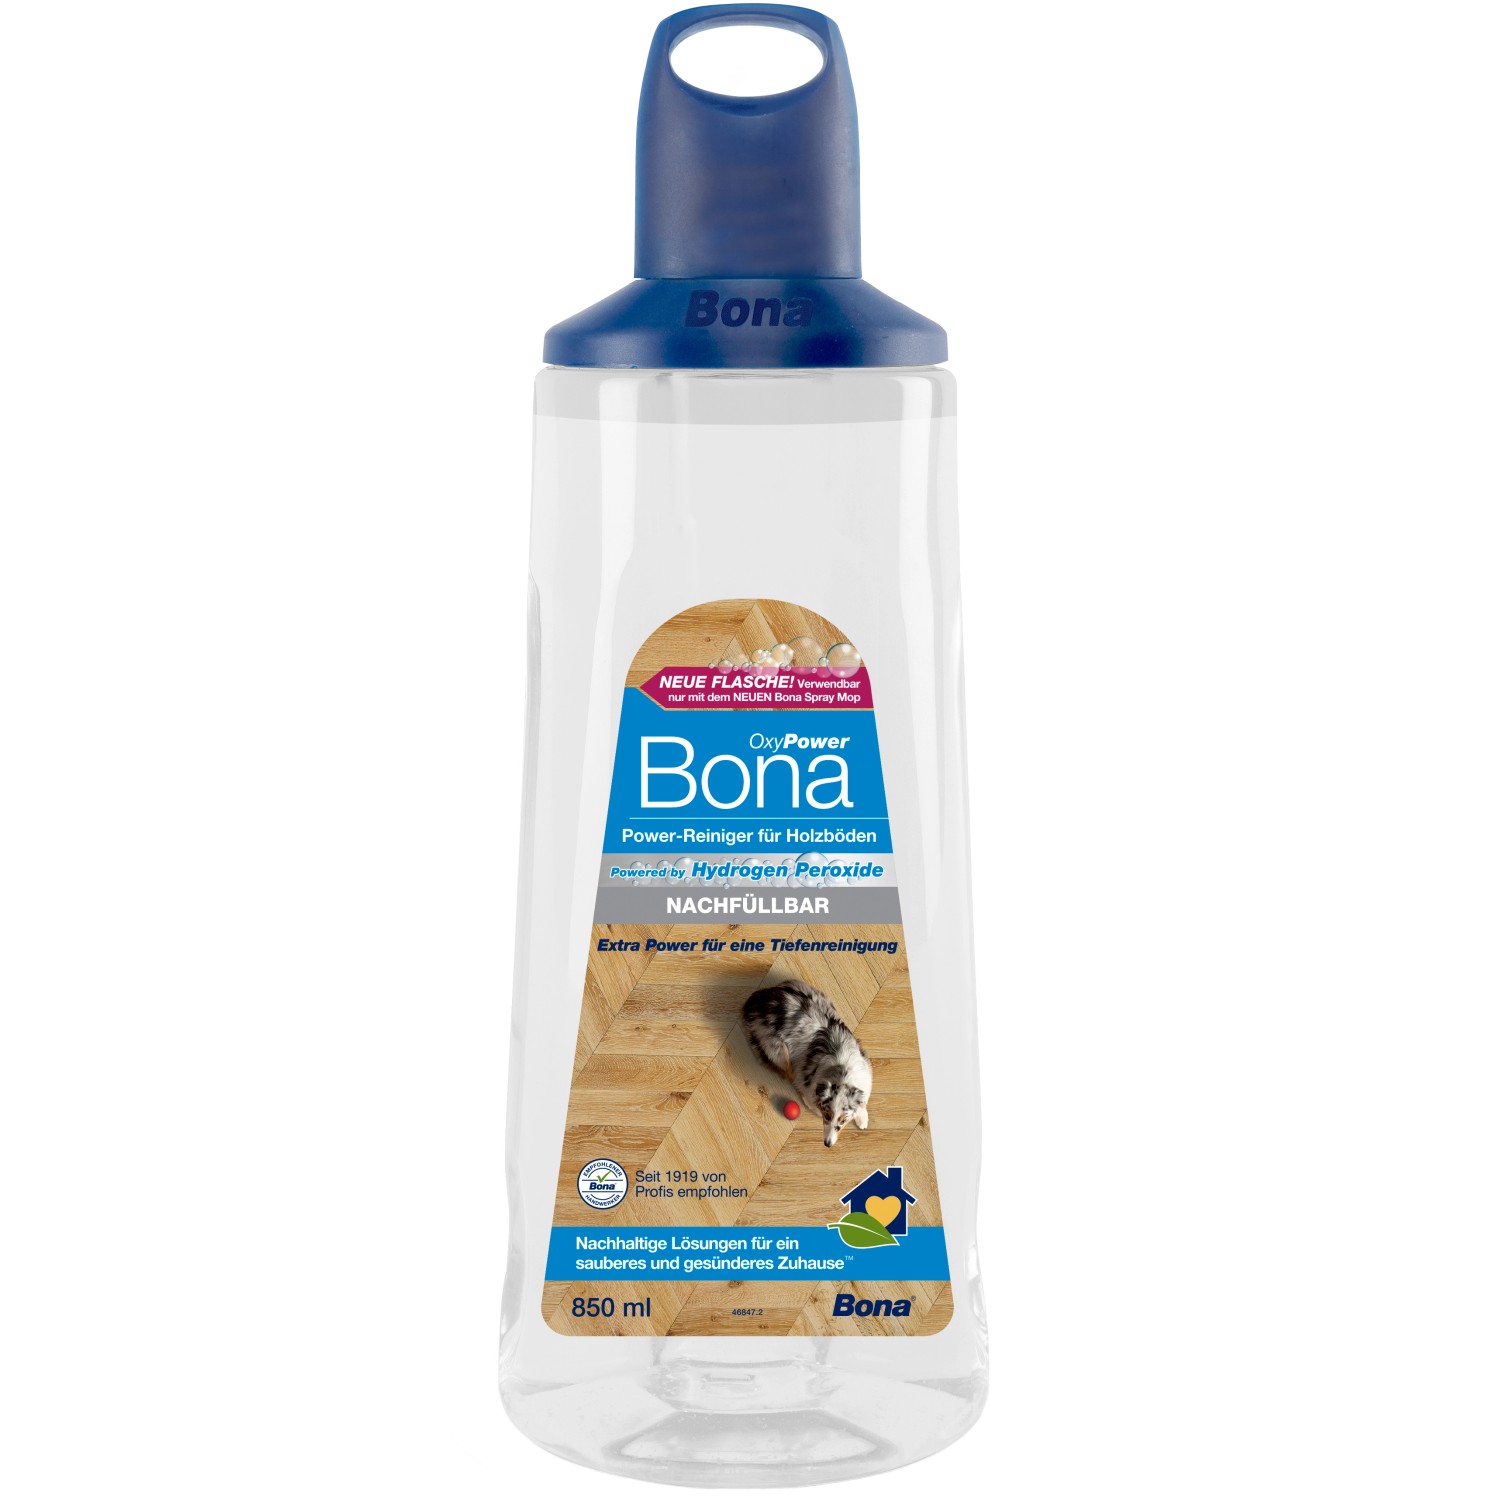 Bona OxyPower-Reiniger für Holzböden Kartusche 850 ml für Bona Premium Spray Mop